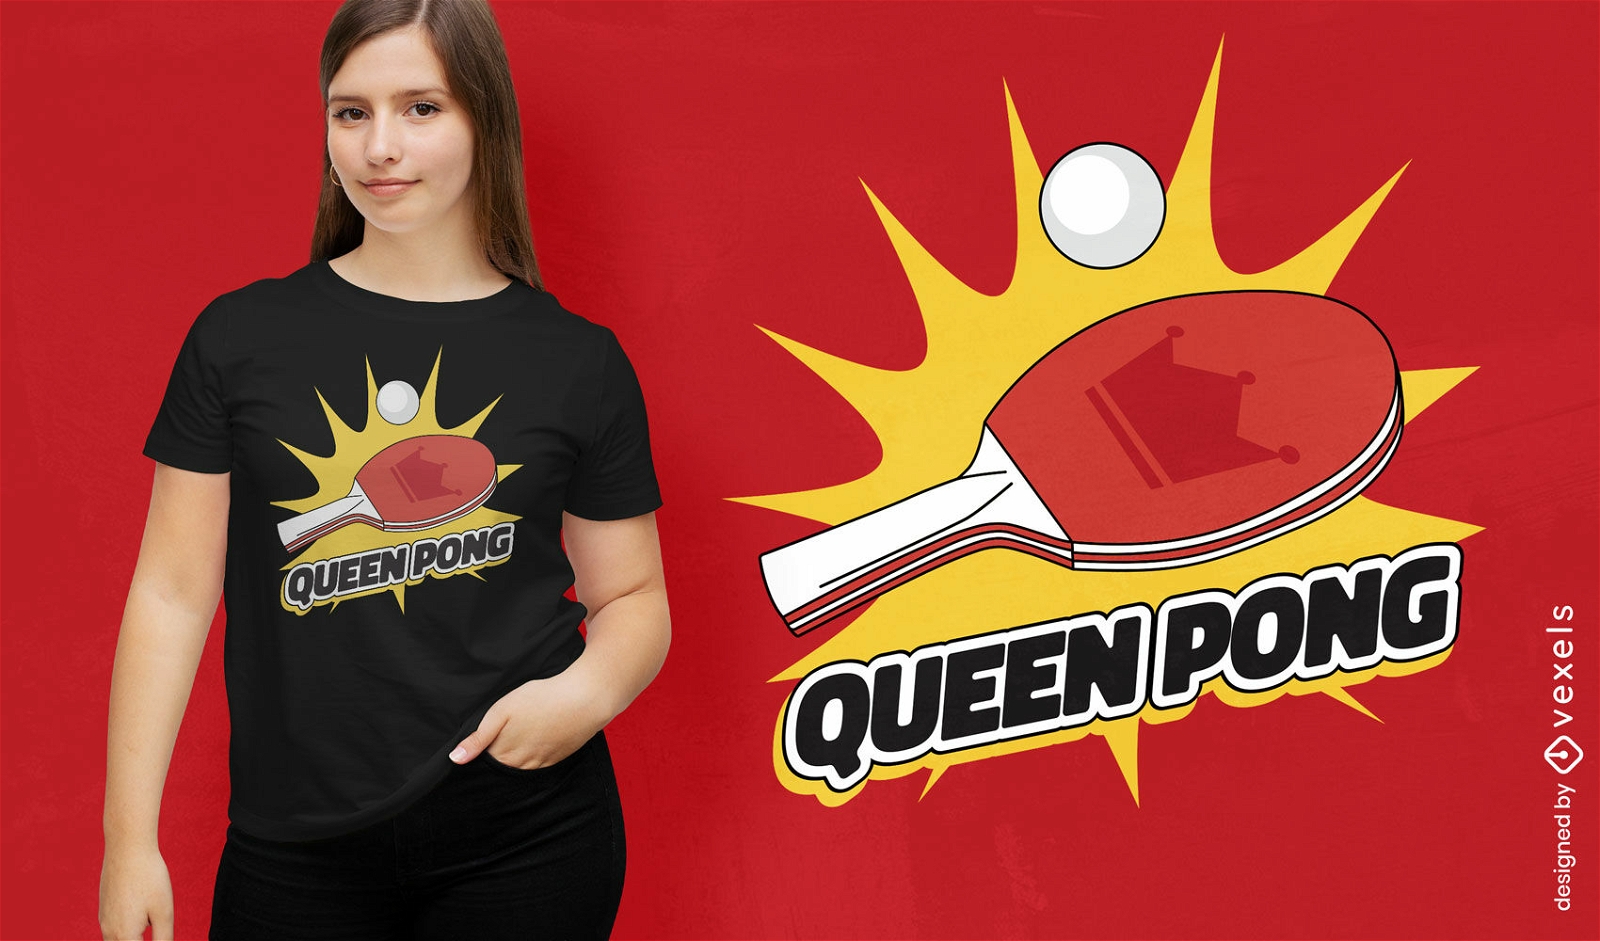 Diseño de camiseta de reina de ping pong.